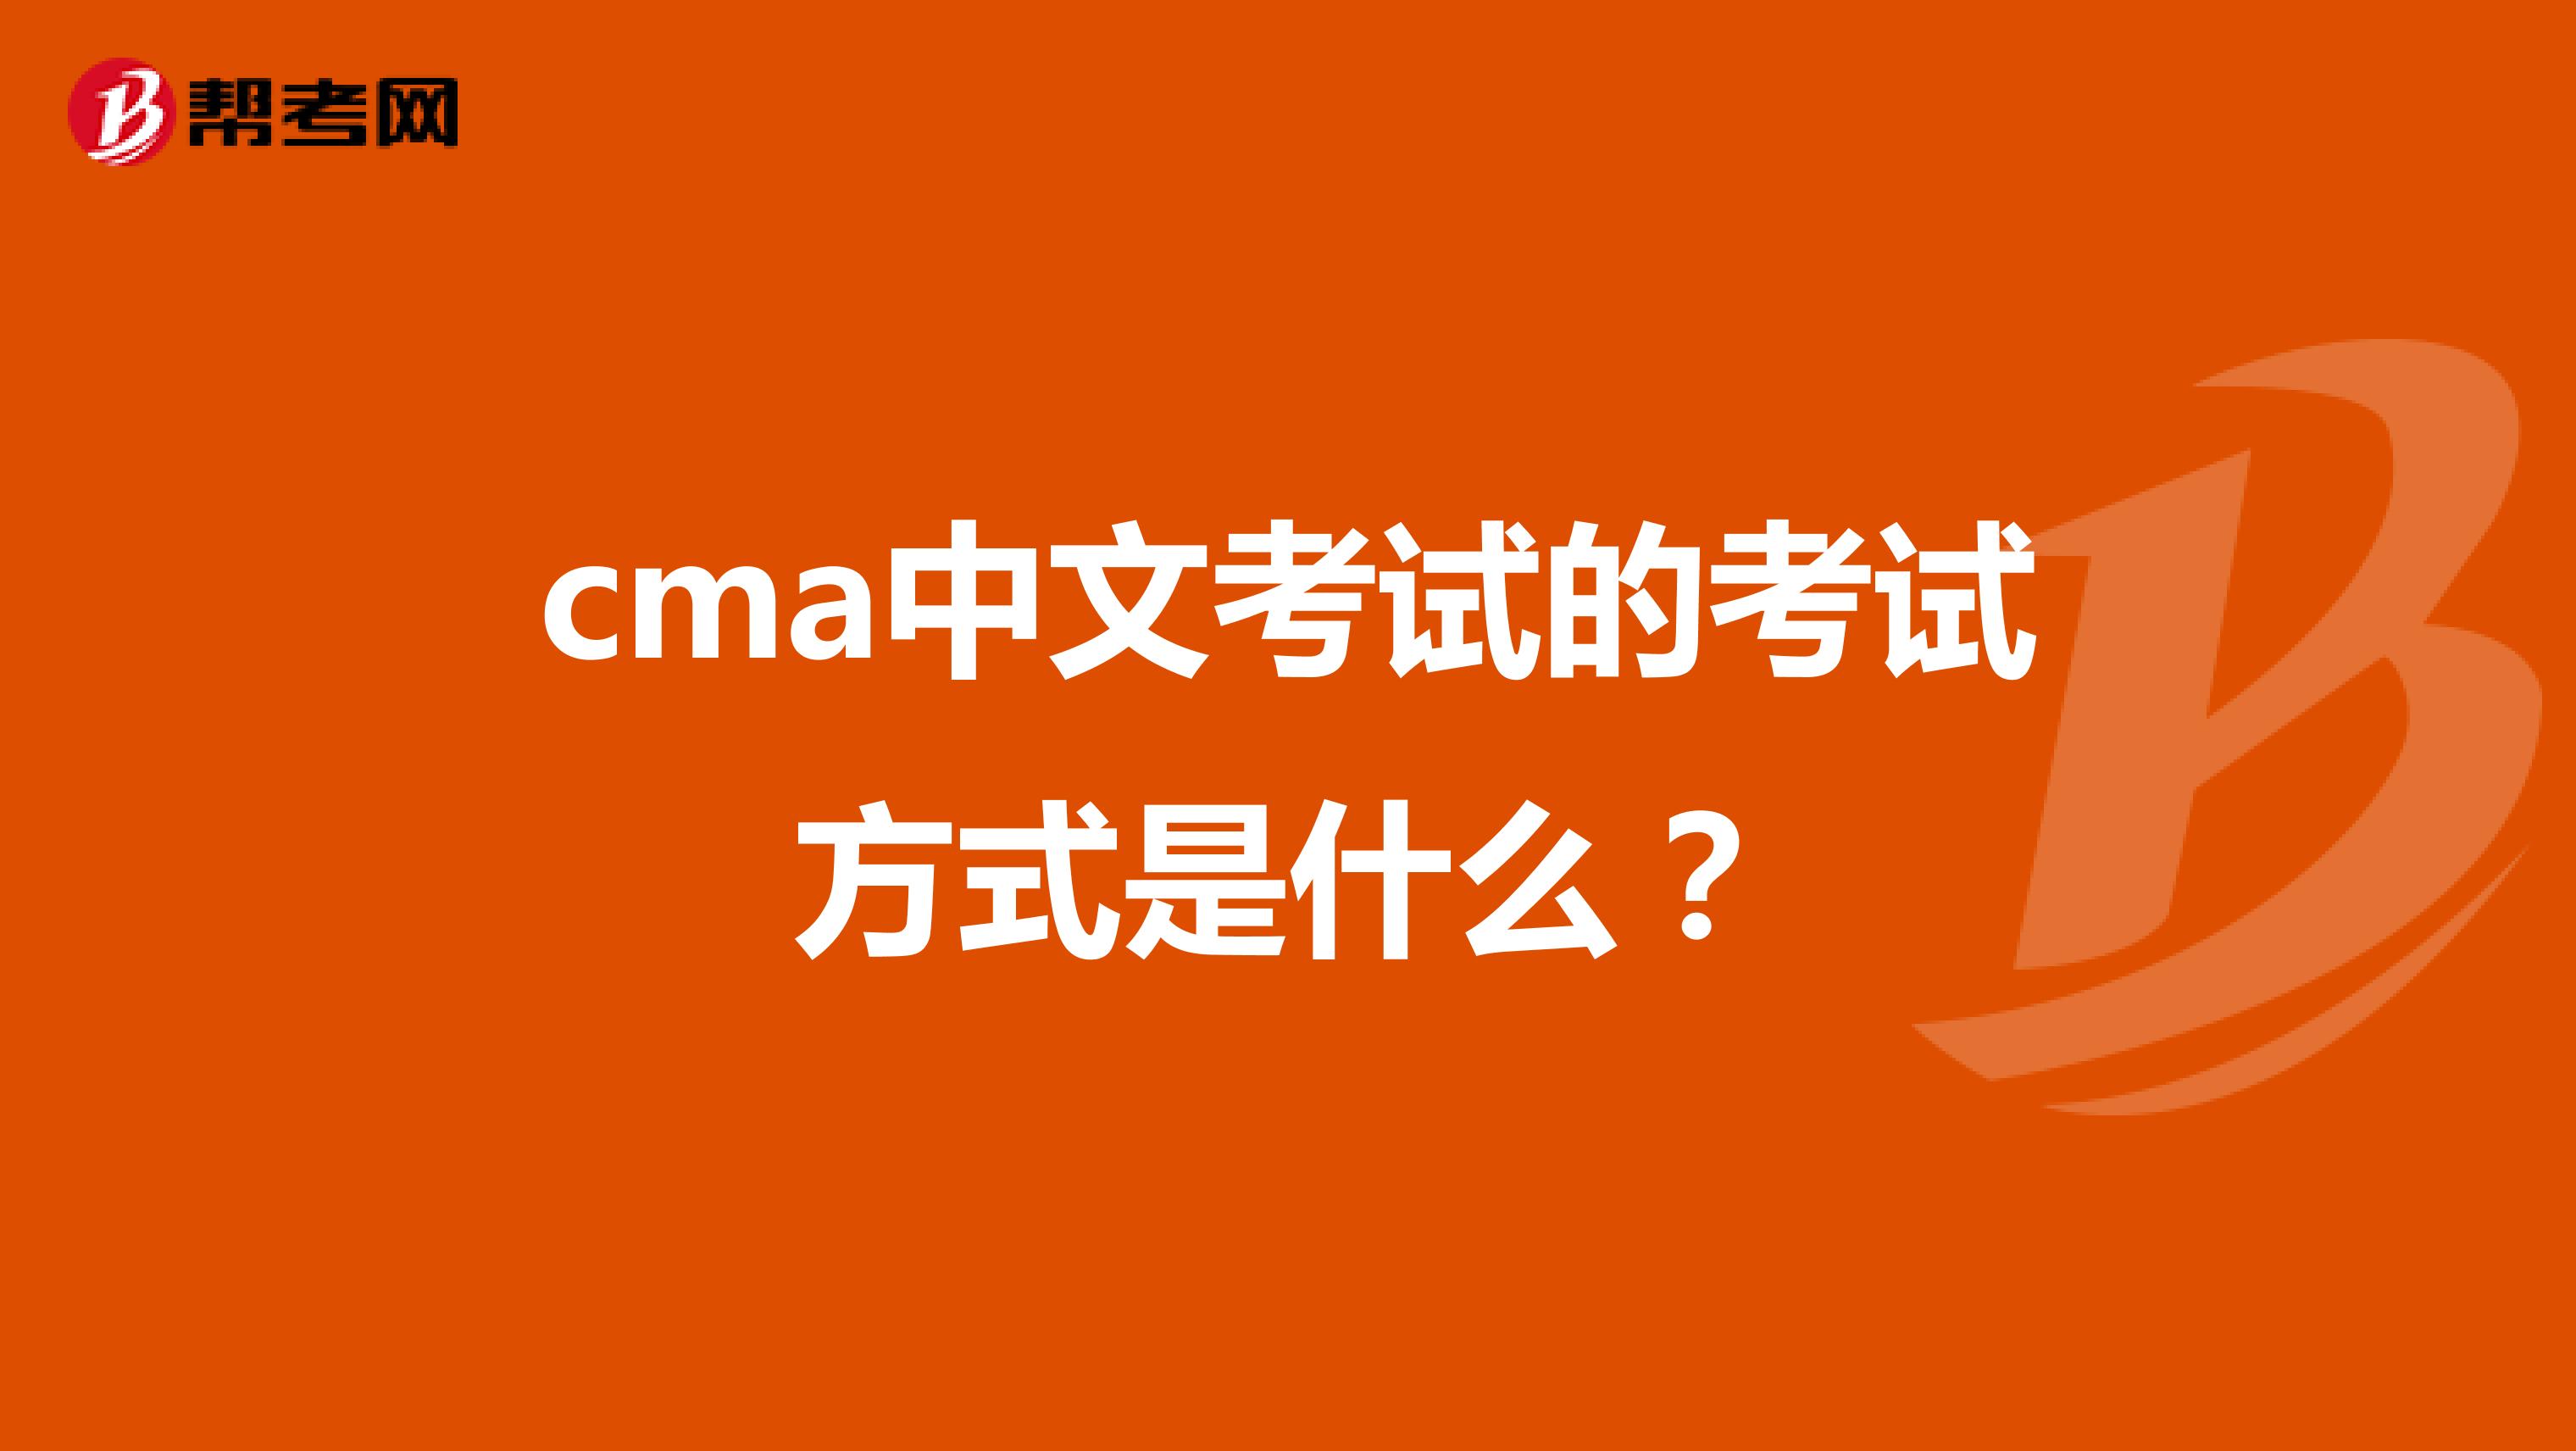 cma中文考试的考试方式是什么？